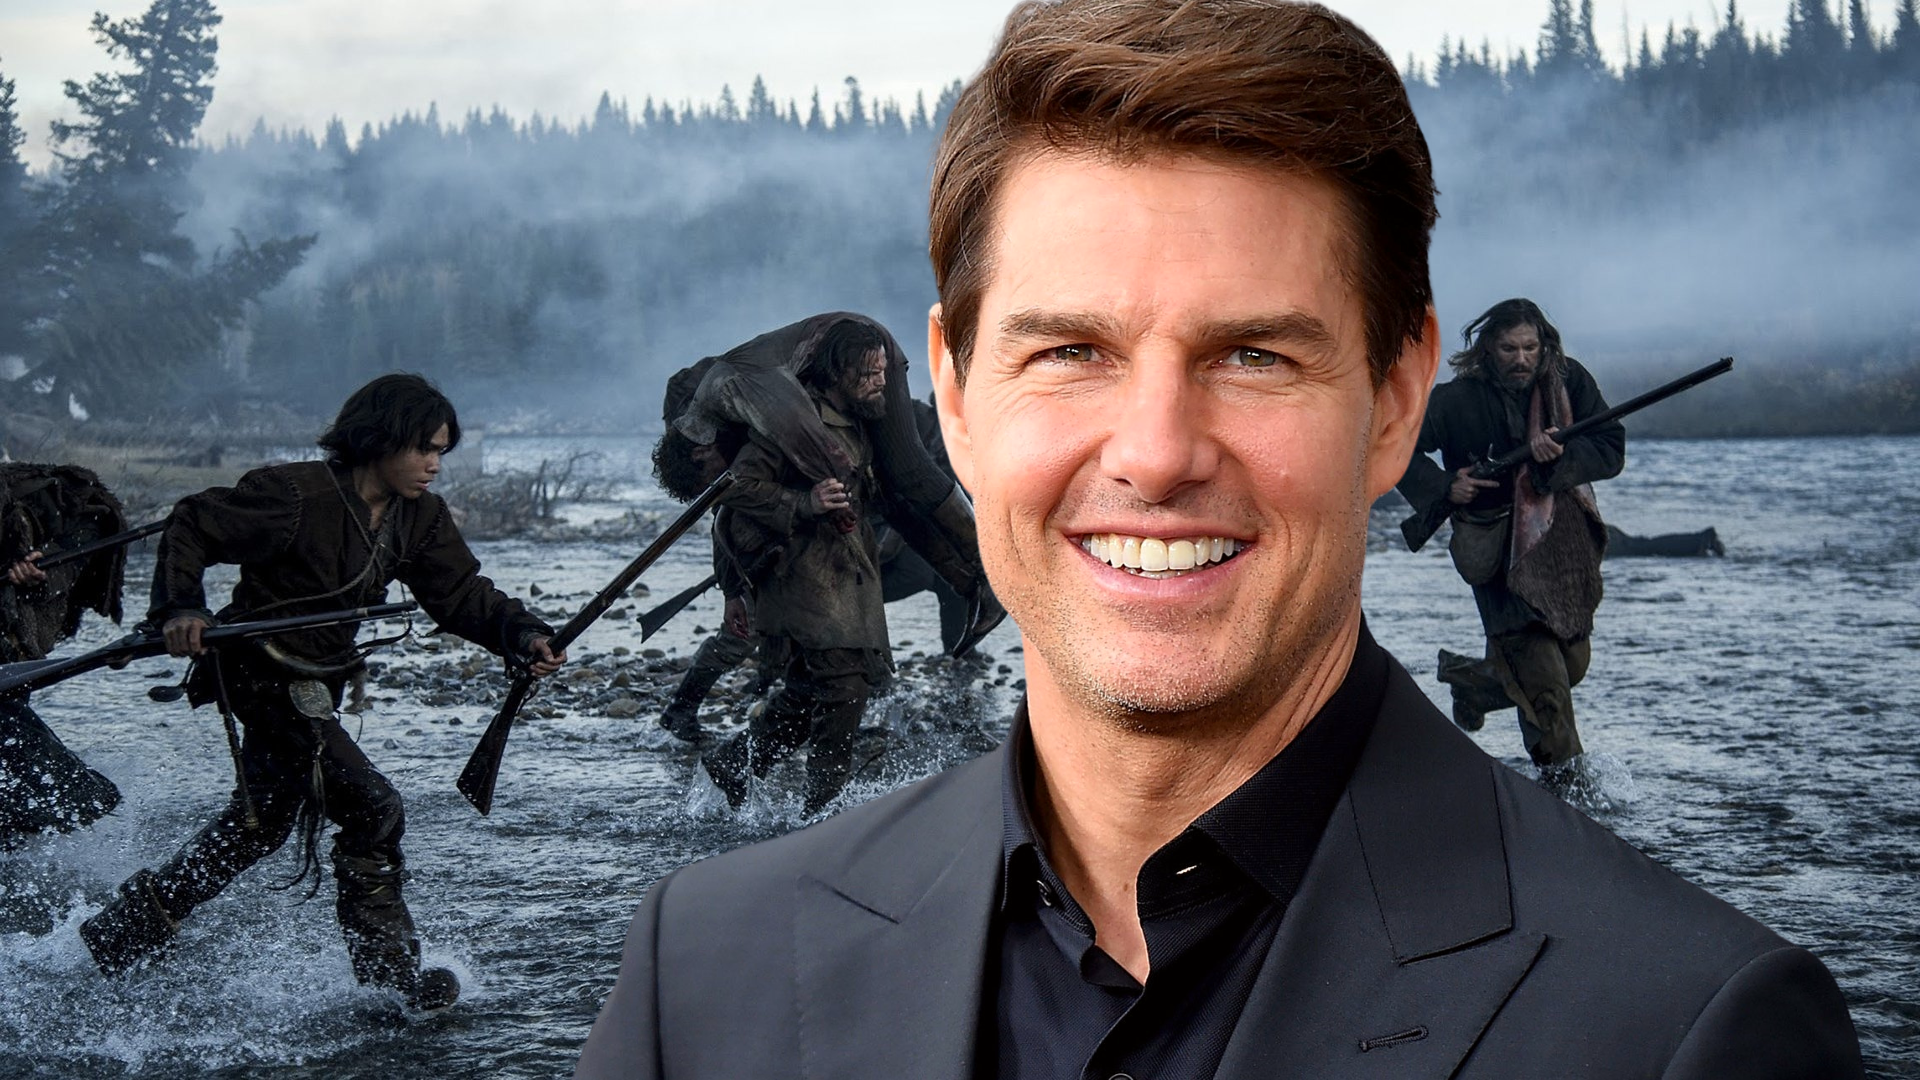 Tom Cruise chez le réalisateur de The Revenant pour un projet de film "top secret"